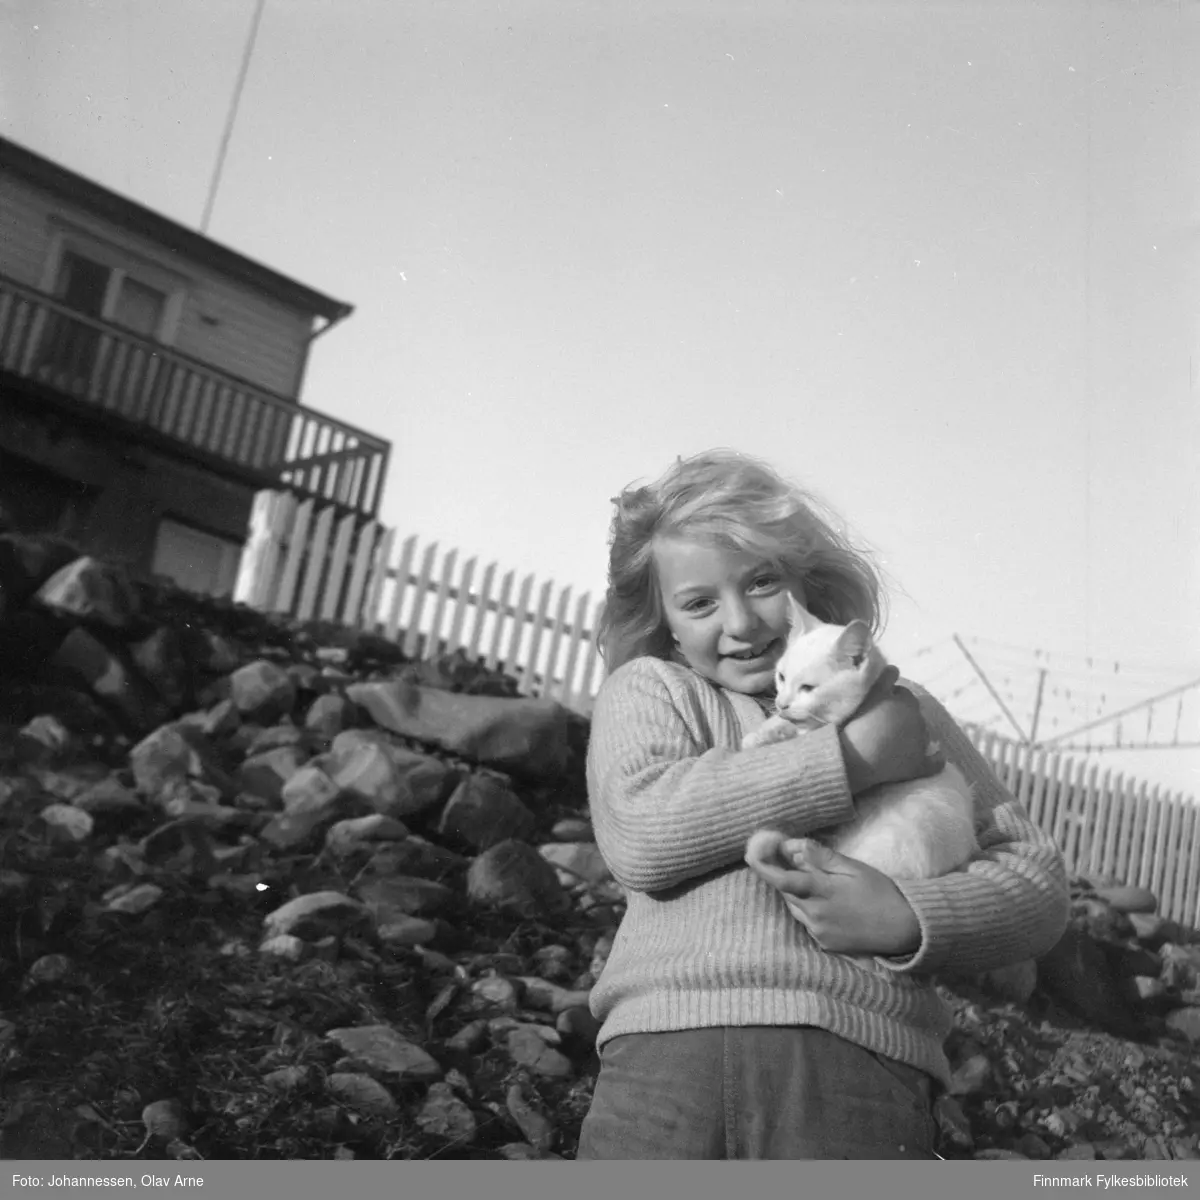 Foto av Kirsti Johansen fra Syltefjord med katten Mio

Foto trolig tatt på 1970-tallet
